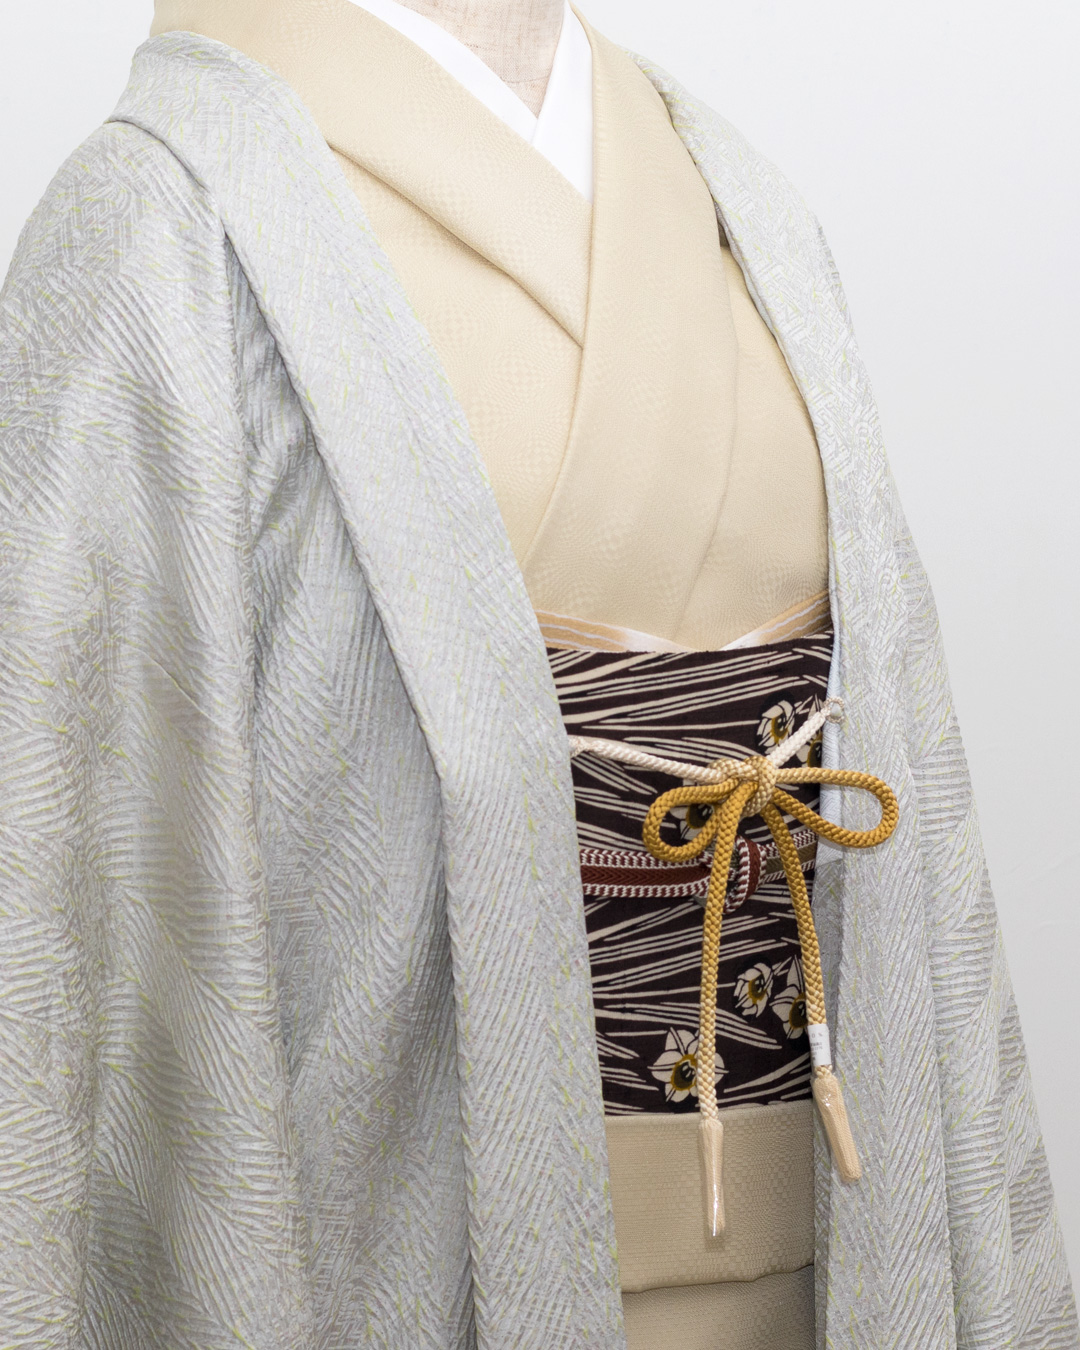 千成堂オリジナルの羽織と羽織紐のコーディネート